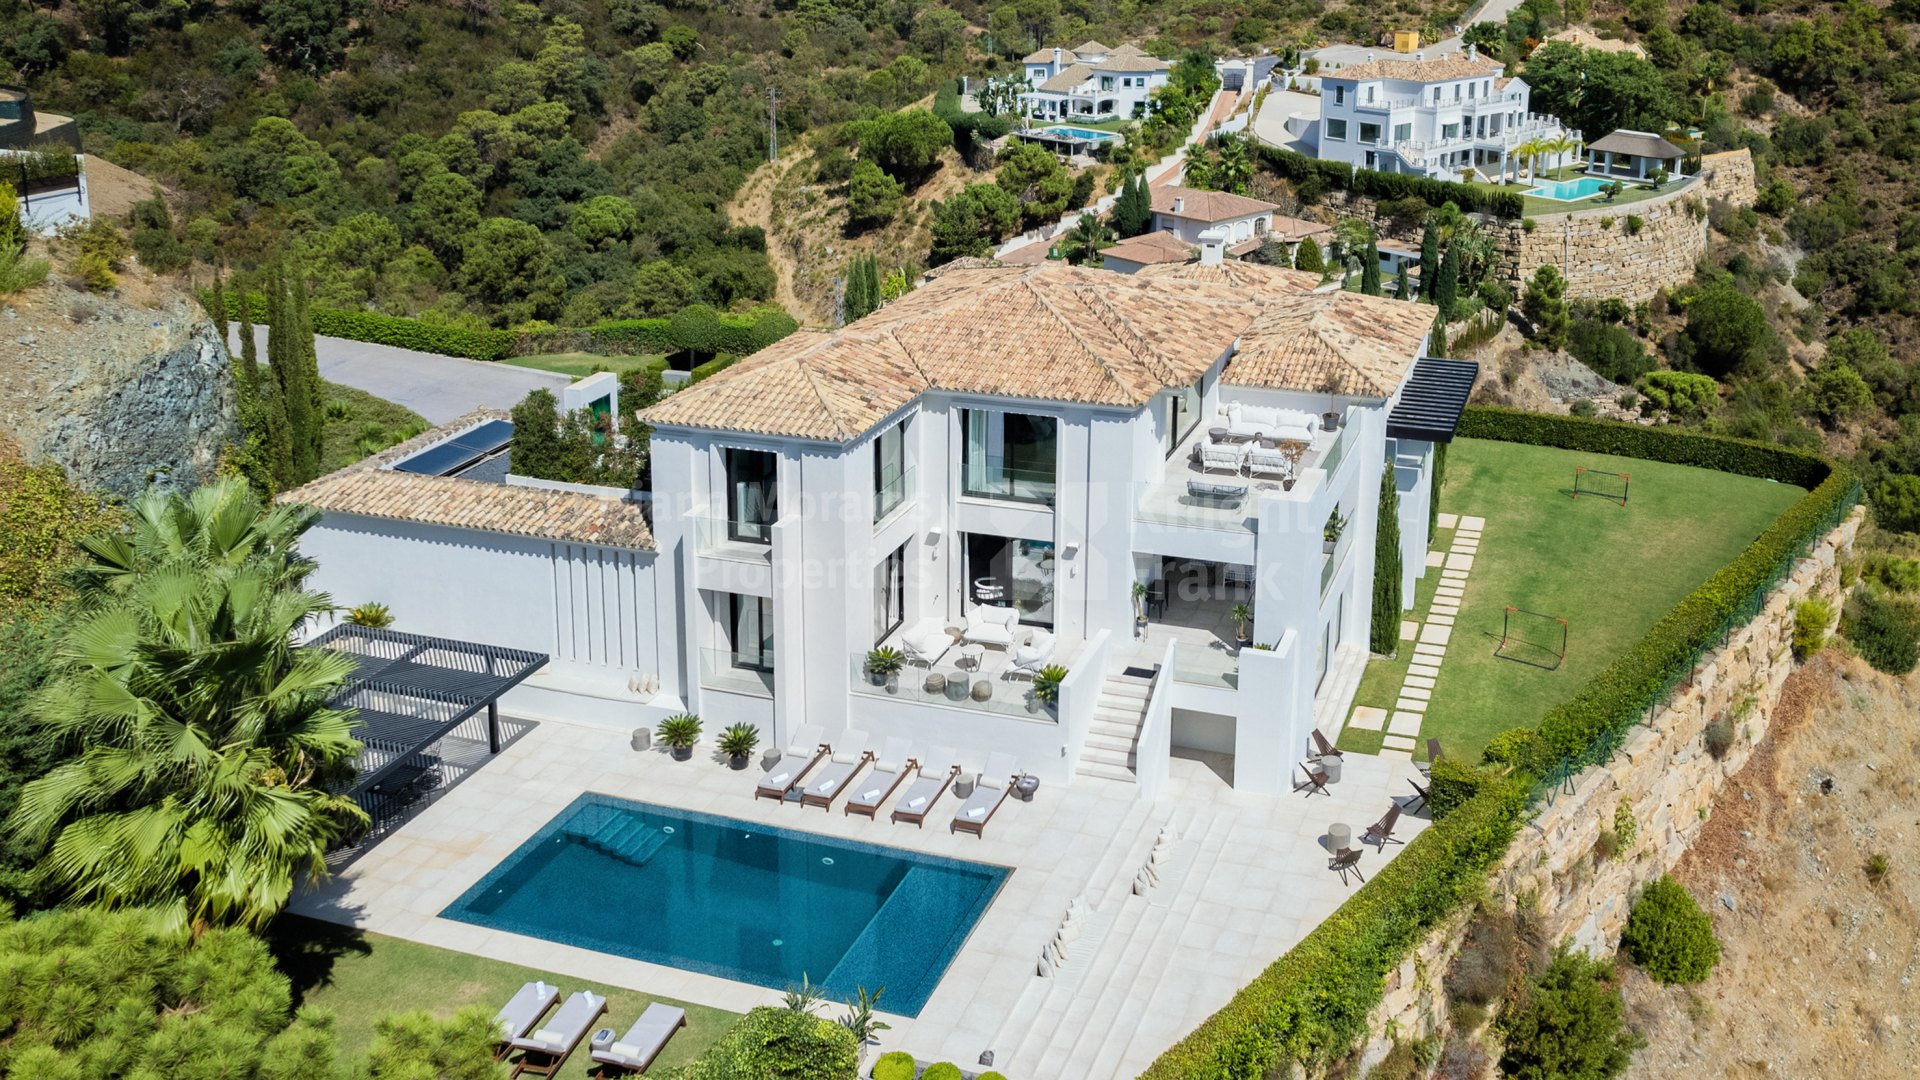 El Madroñal, New contemporary style villa with sea views